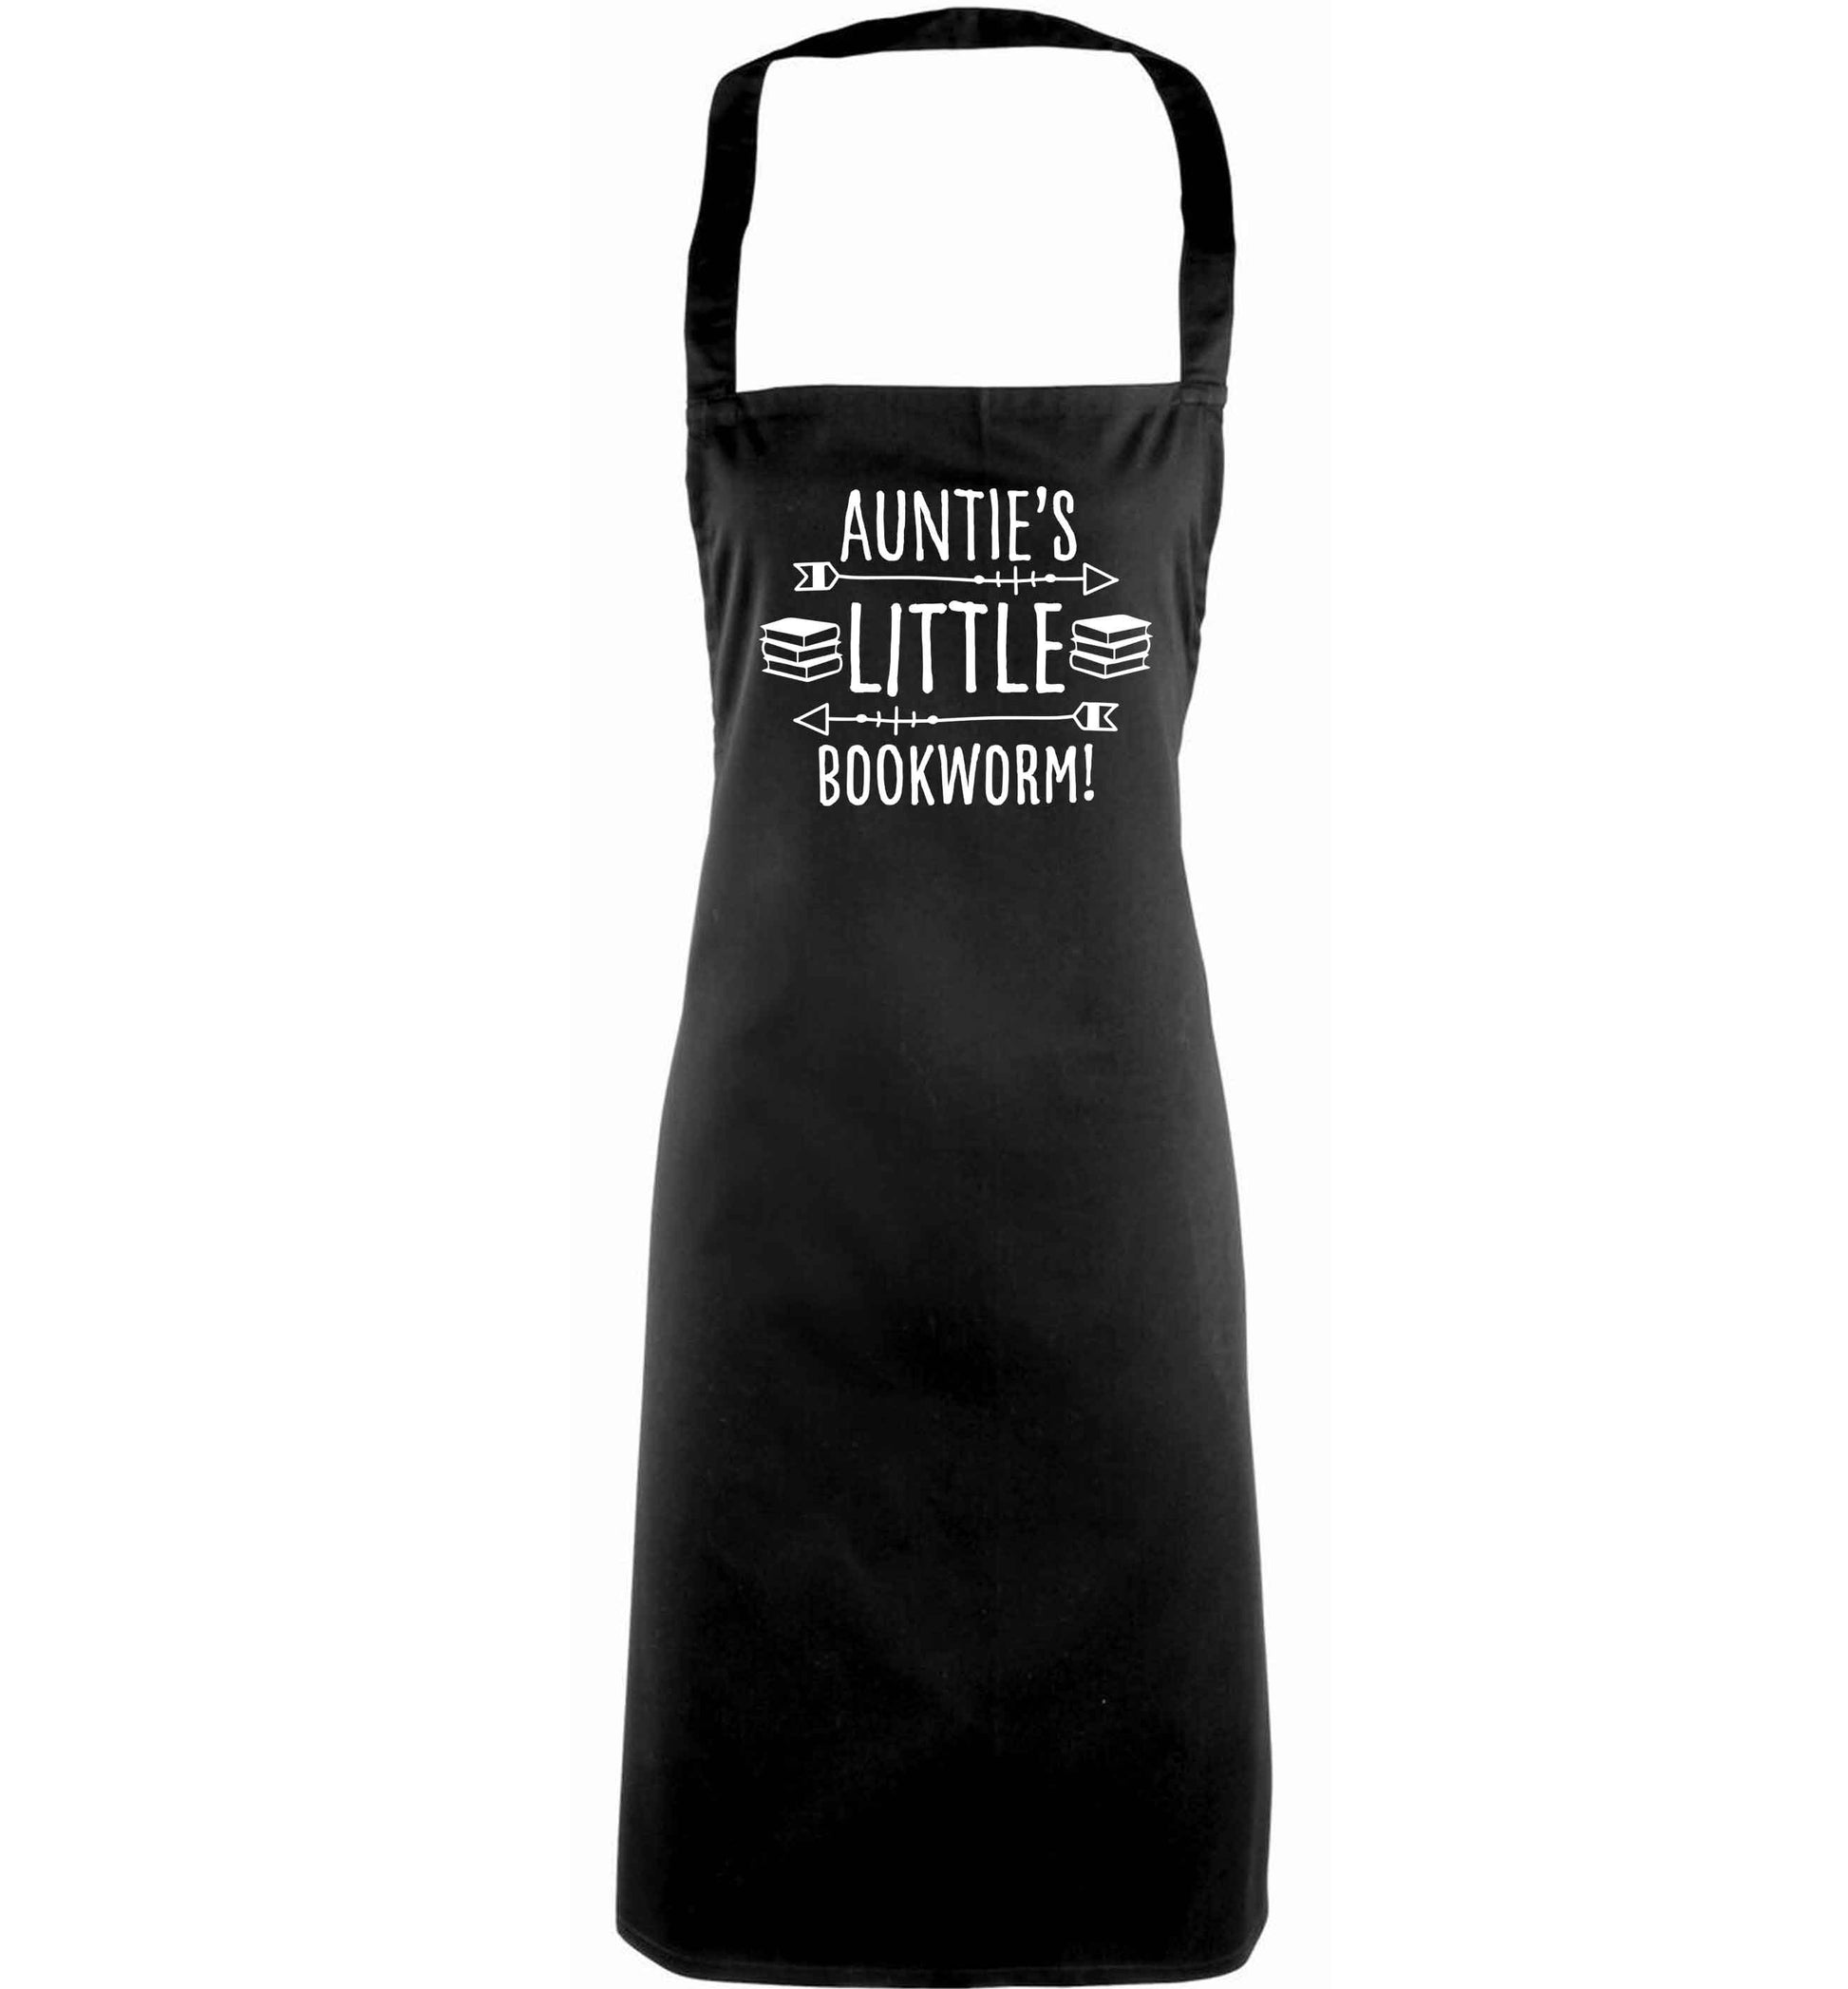 Auntie's little bookworm adults black apron